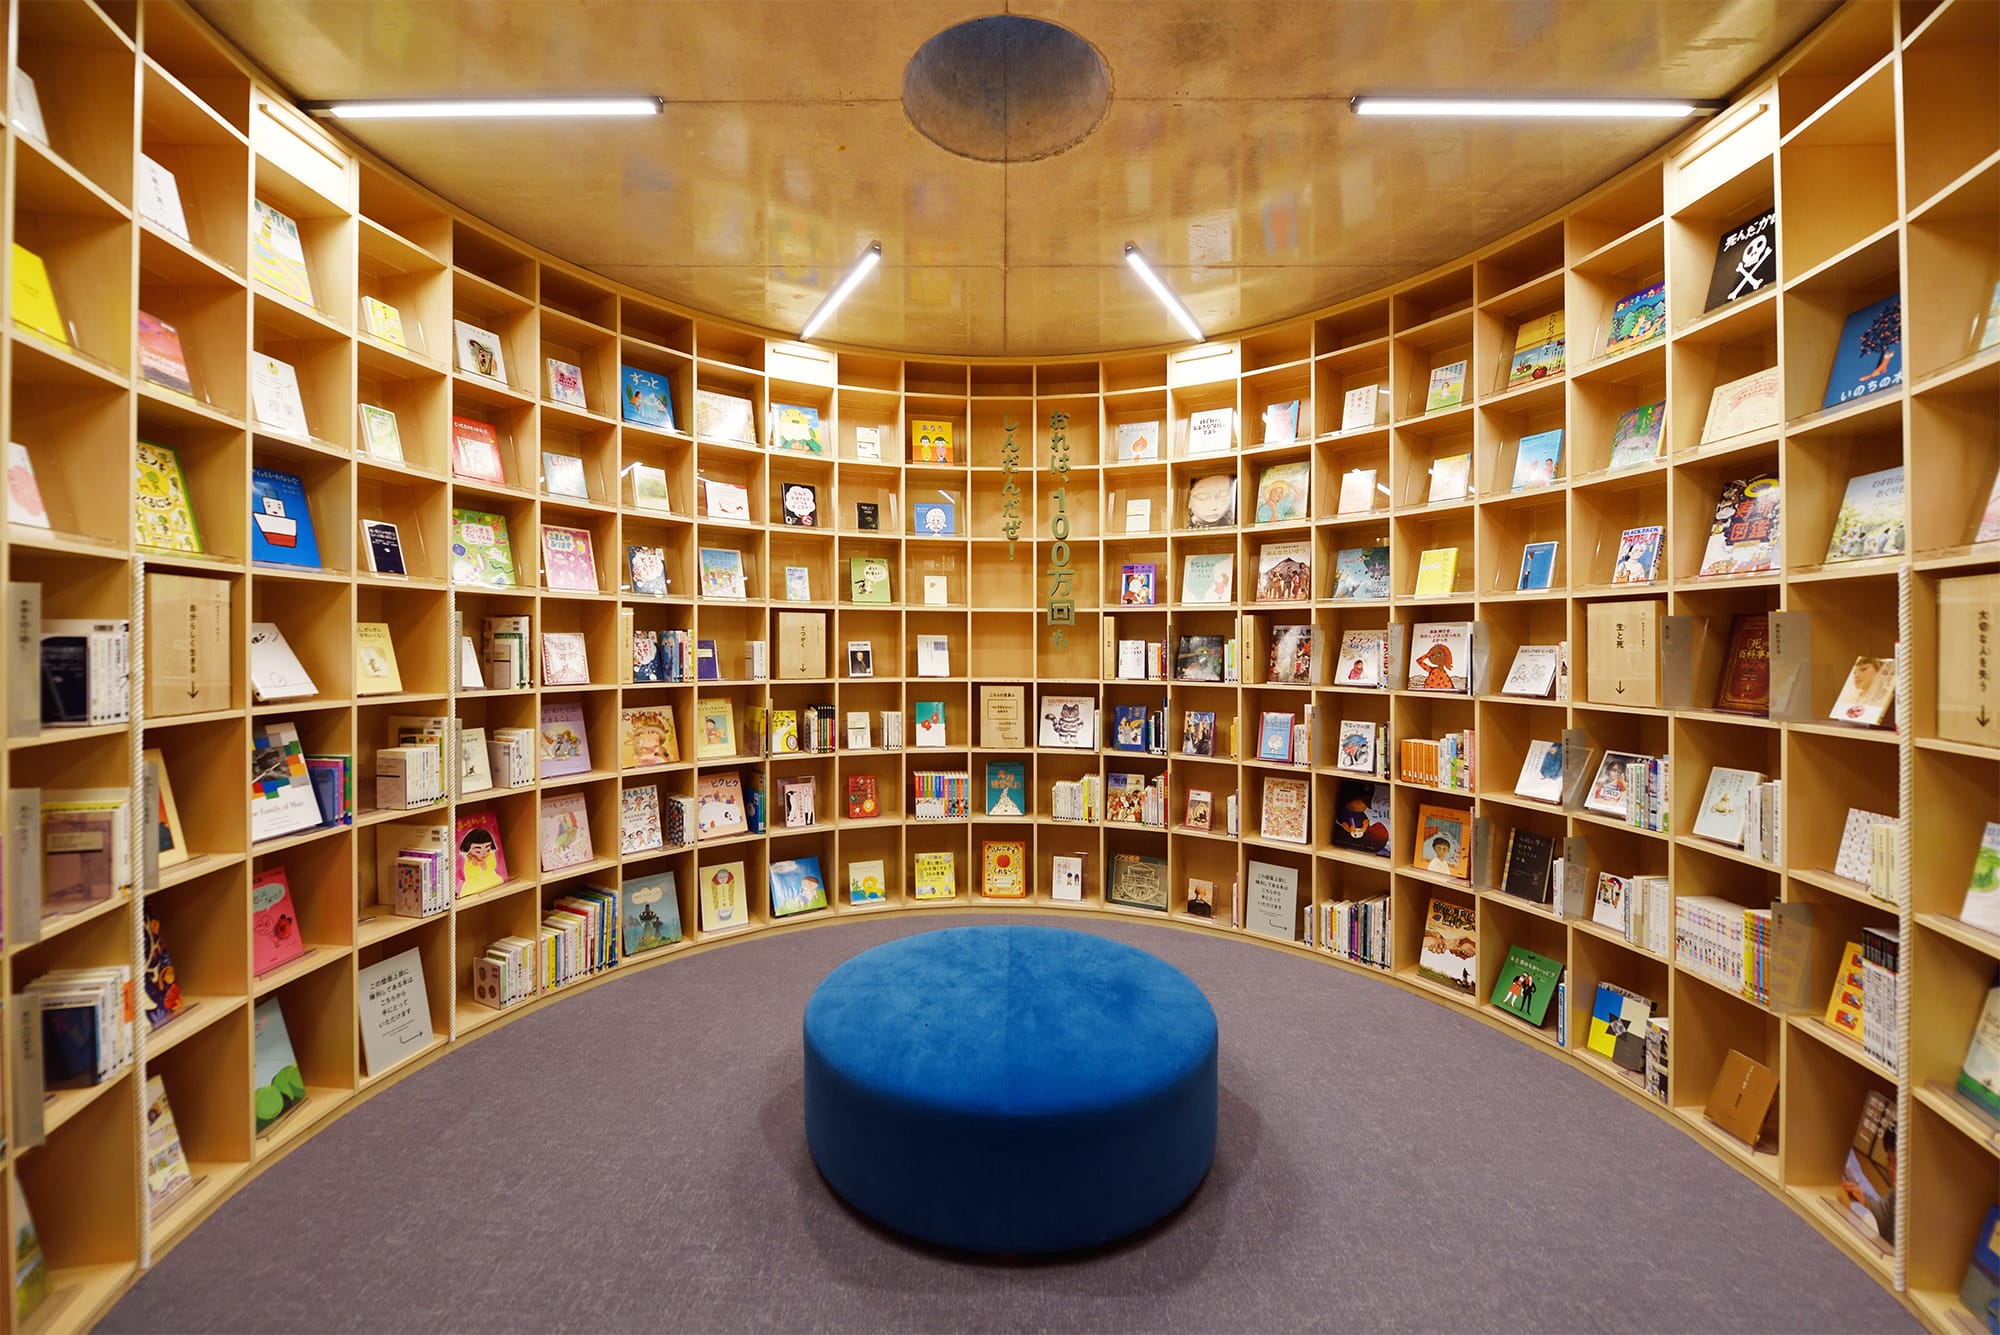 横穴から潜り込むようにして入る円形の書架は、輪廻をイメージした配架に。1人静かに心を落ち着けて読書が楽しむこともできる。